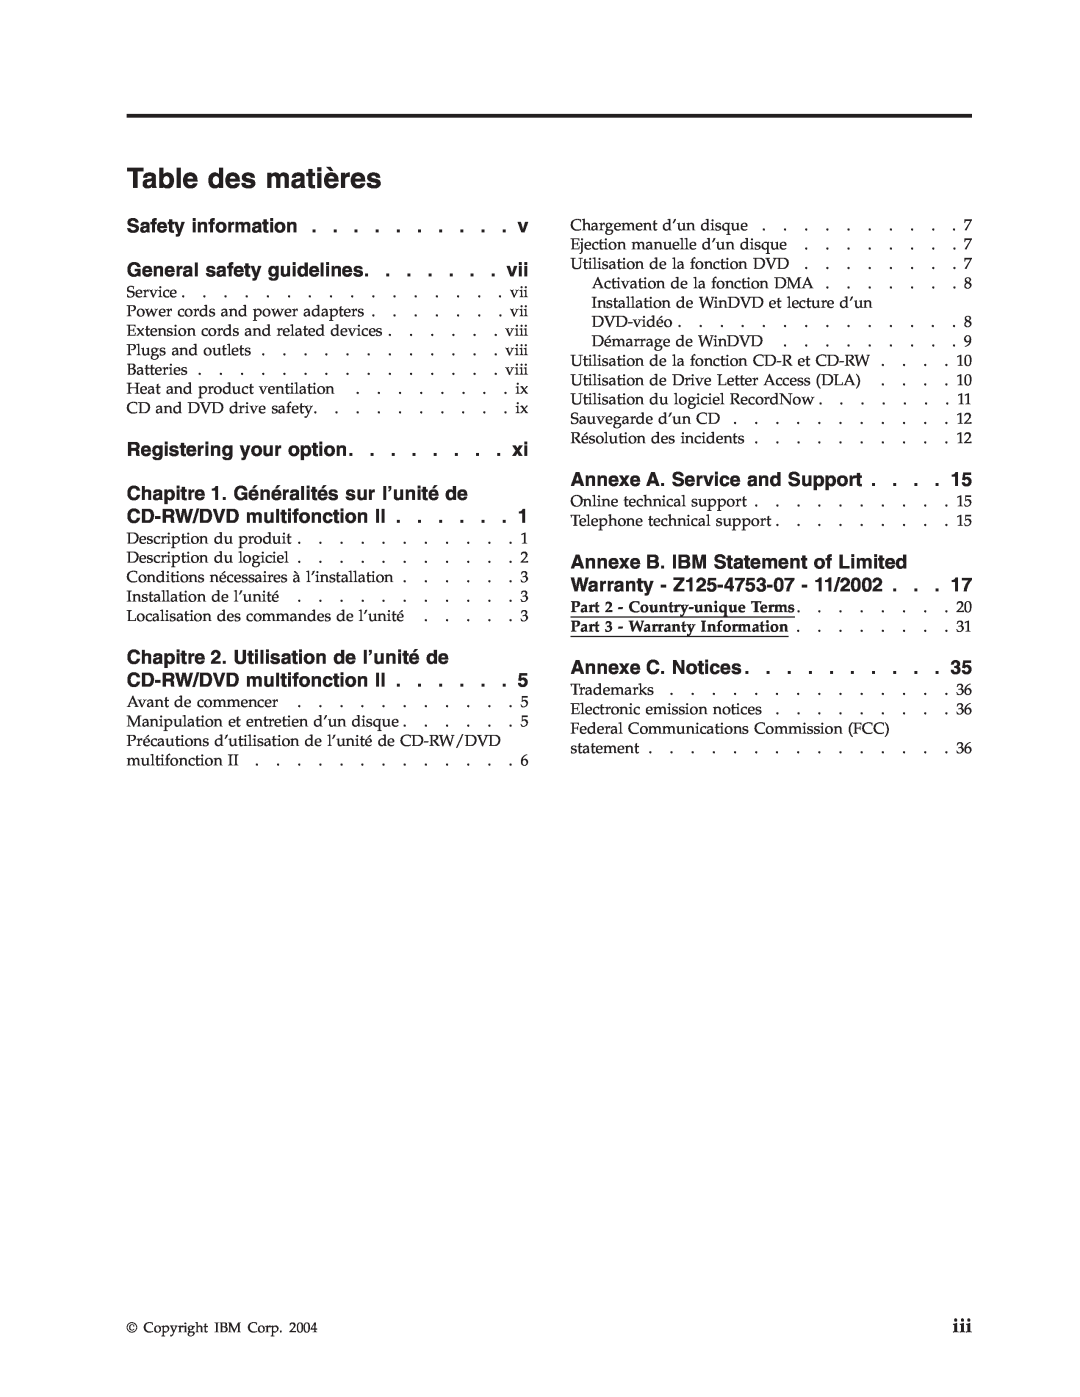 IBM 73P3292 manual Table des matières, Part 2 - Country-unique Terms, Part 3 - Warranty Information 